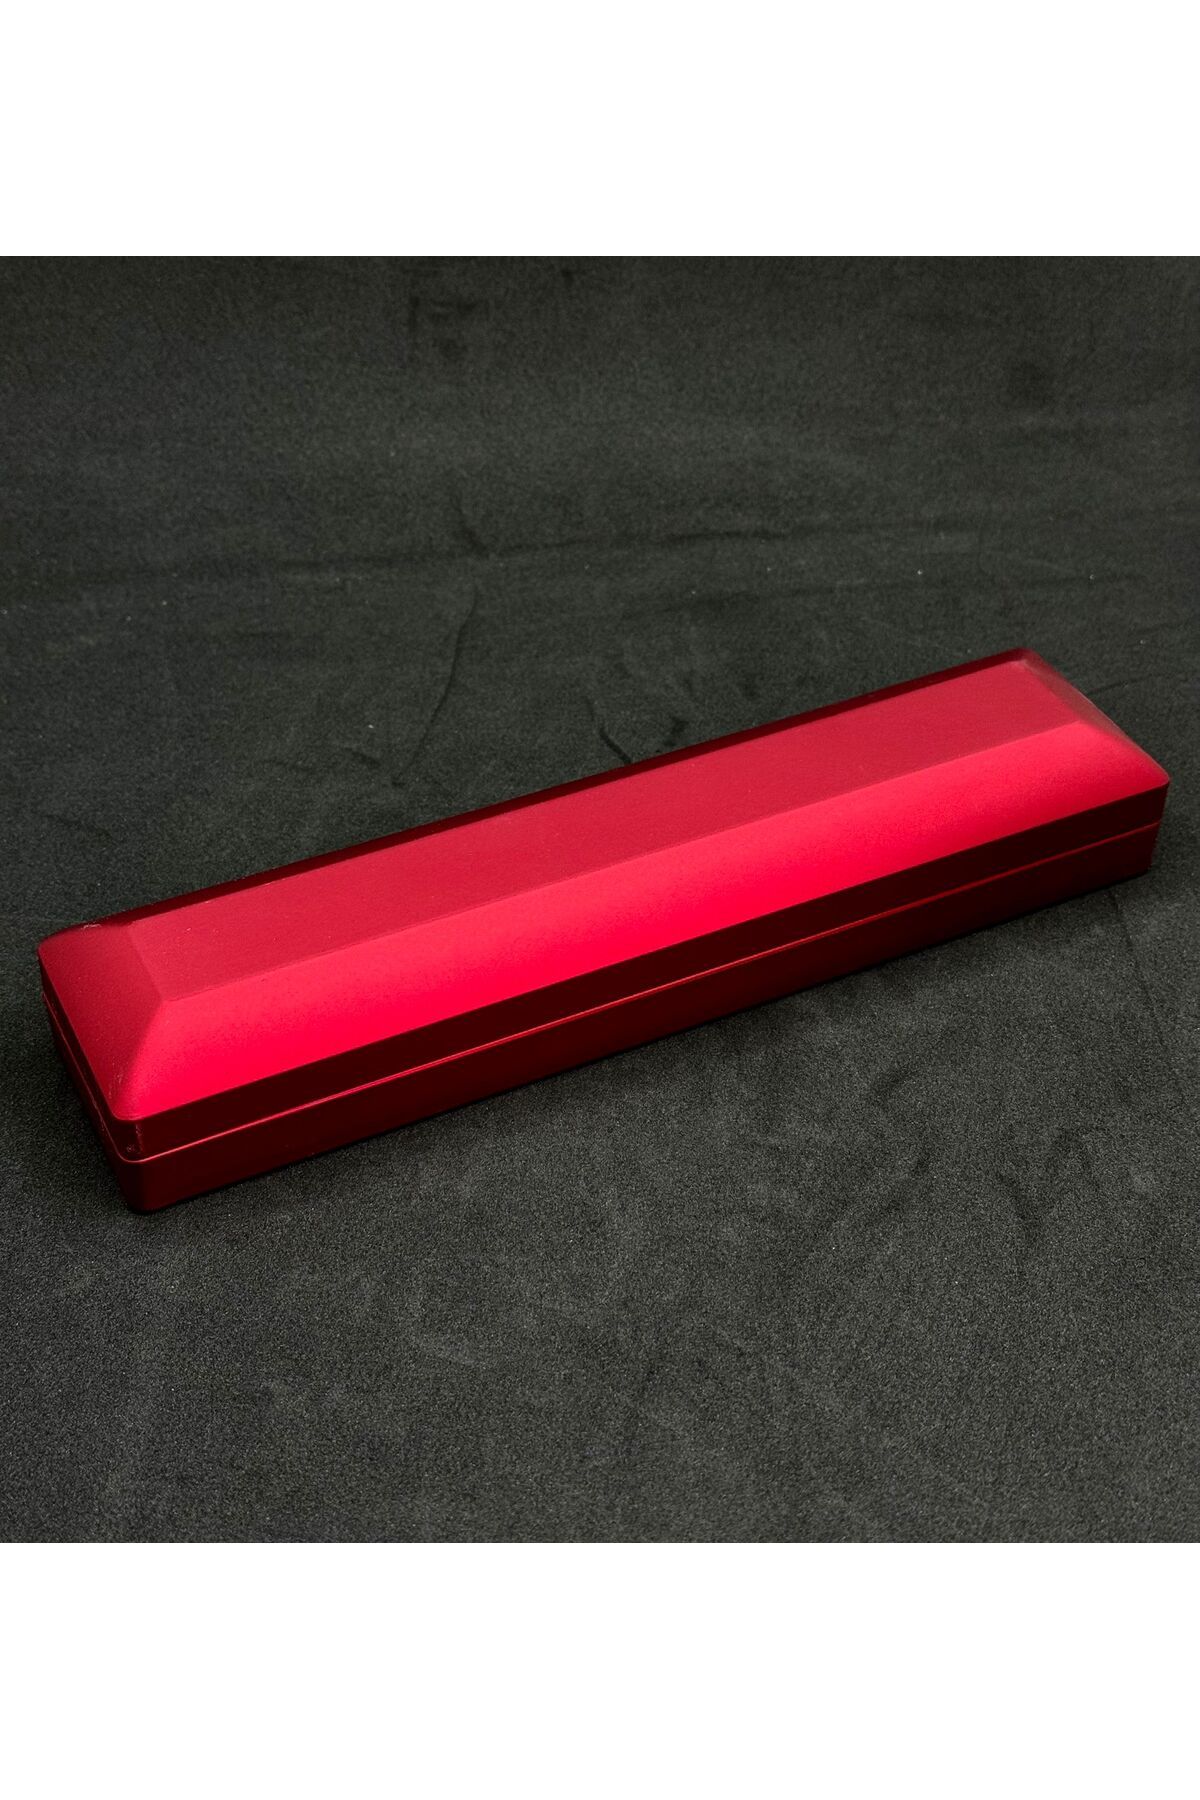 KEHRİBAREVİ EREĞLİ Led ışıklı özel Tesbih/ bileklik kutusu içi siyah kadife dışı kırmızı şık kutu